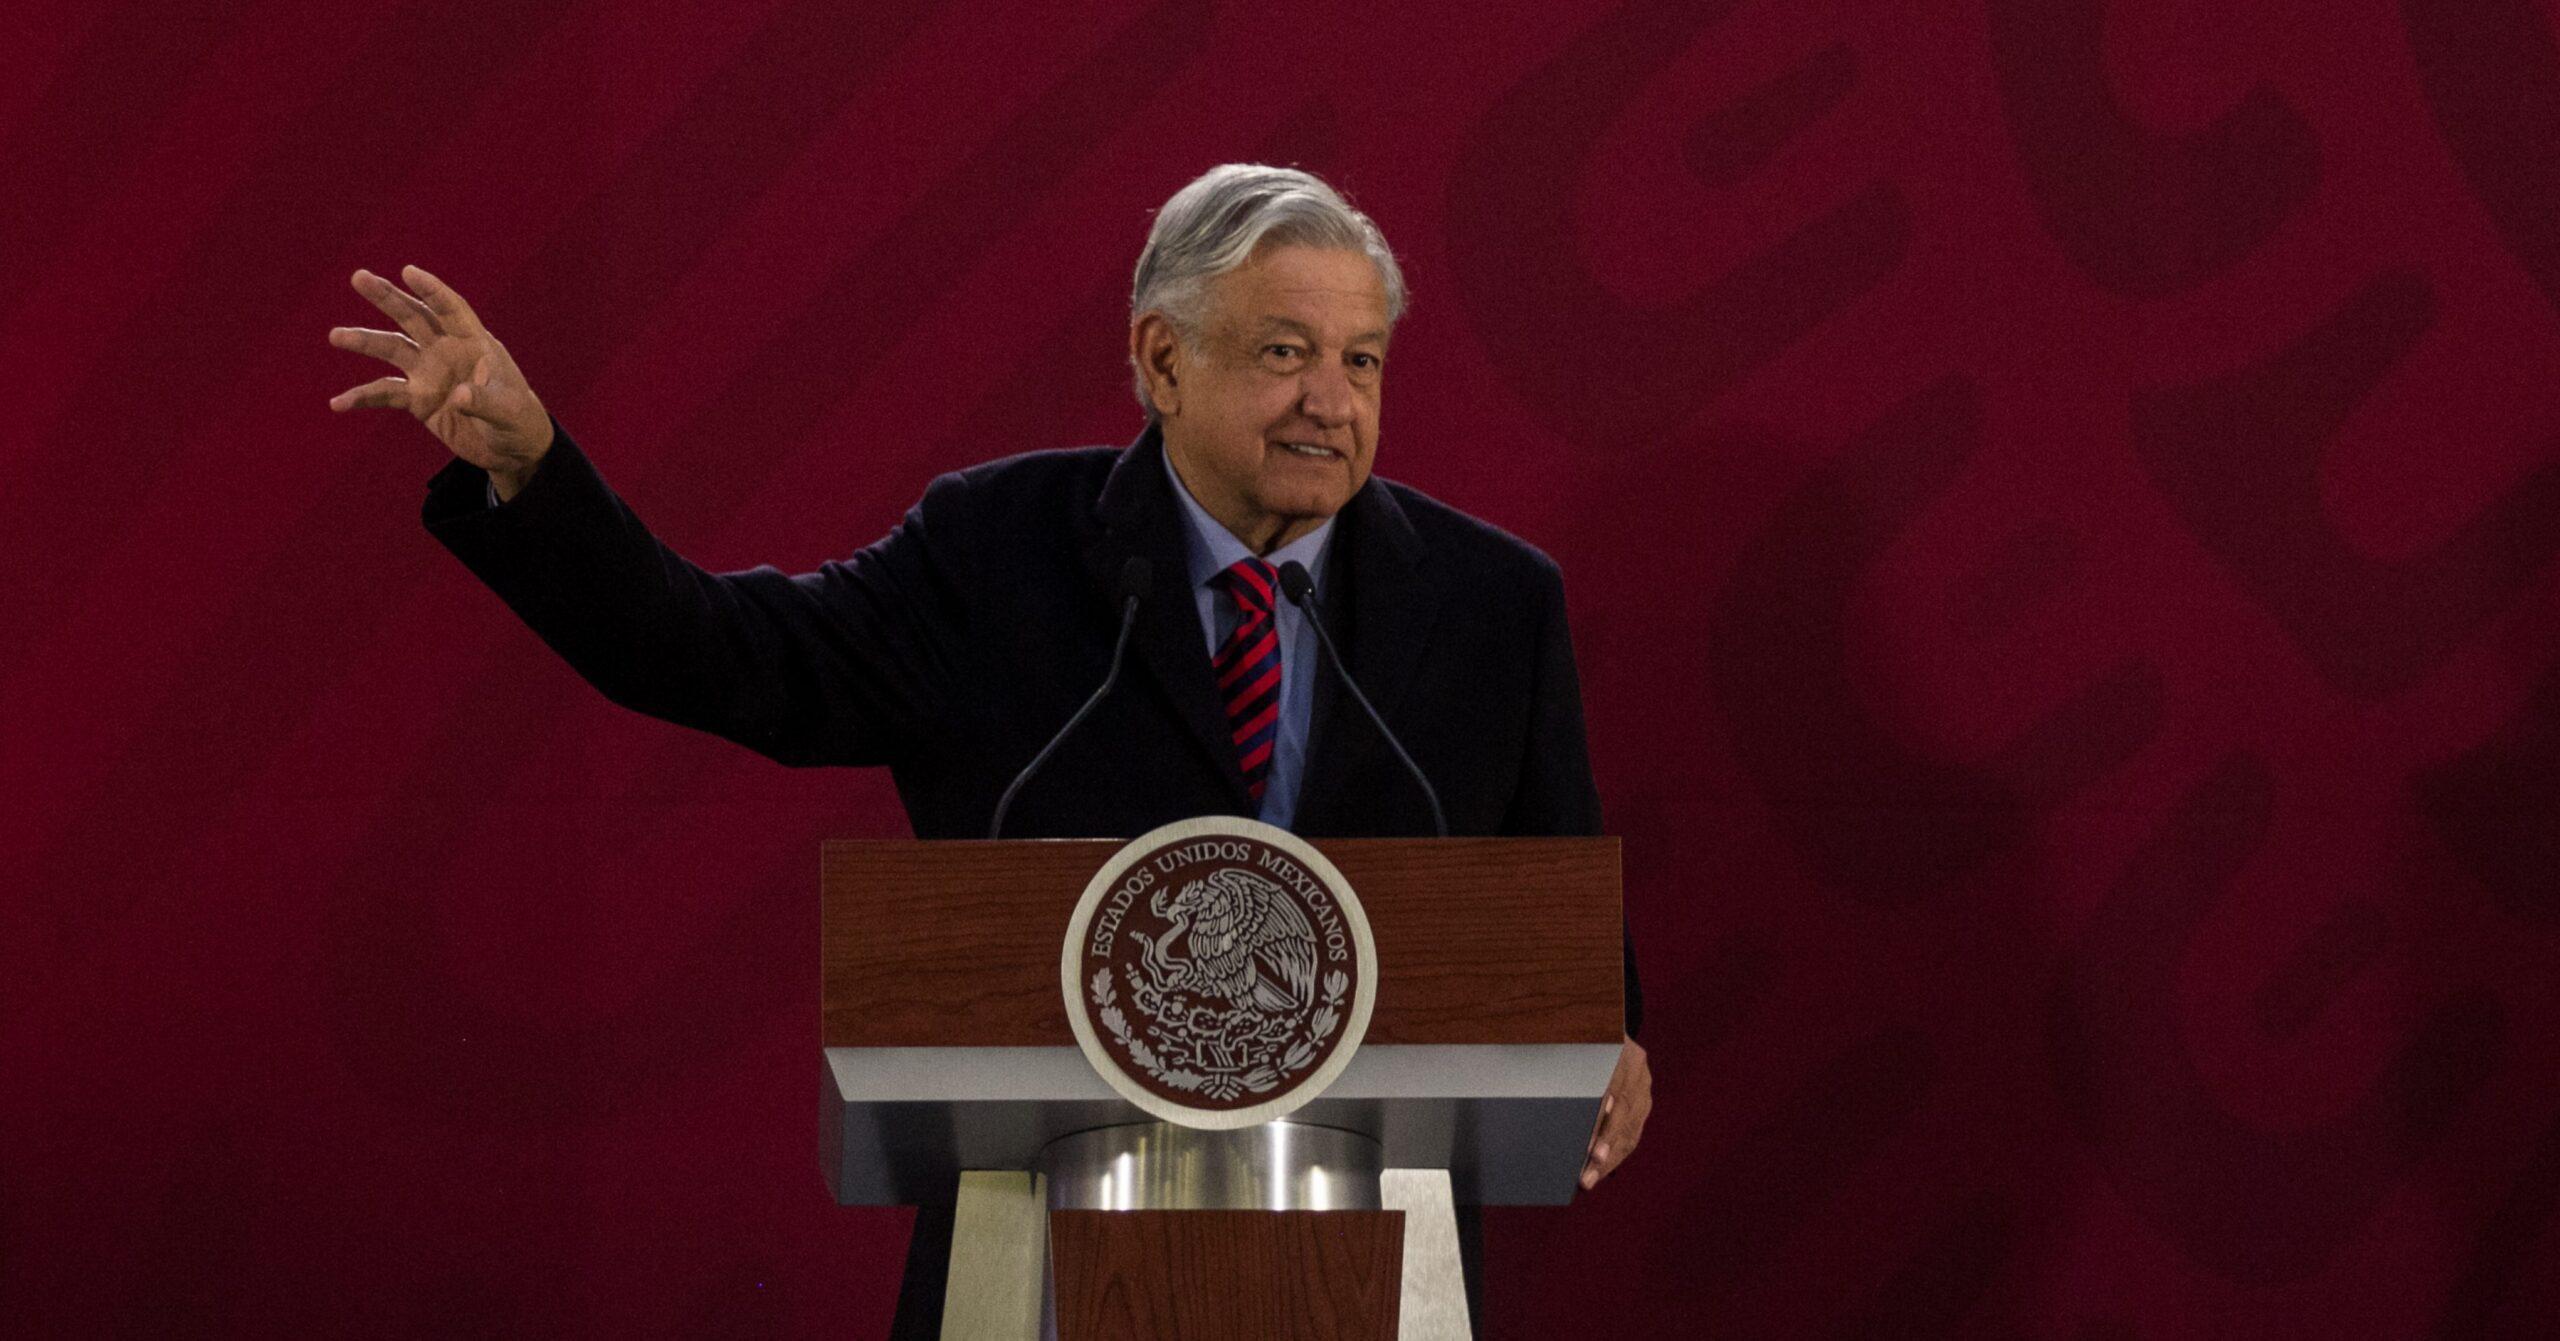 López Obrador no dijo que la gasolina está a punto de acabarse; el video está manipulado